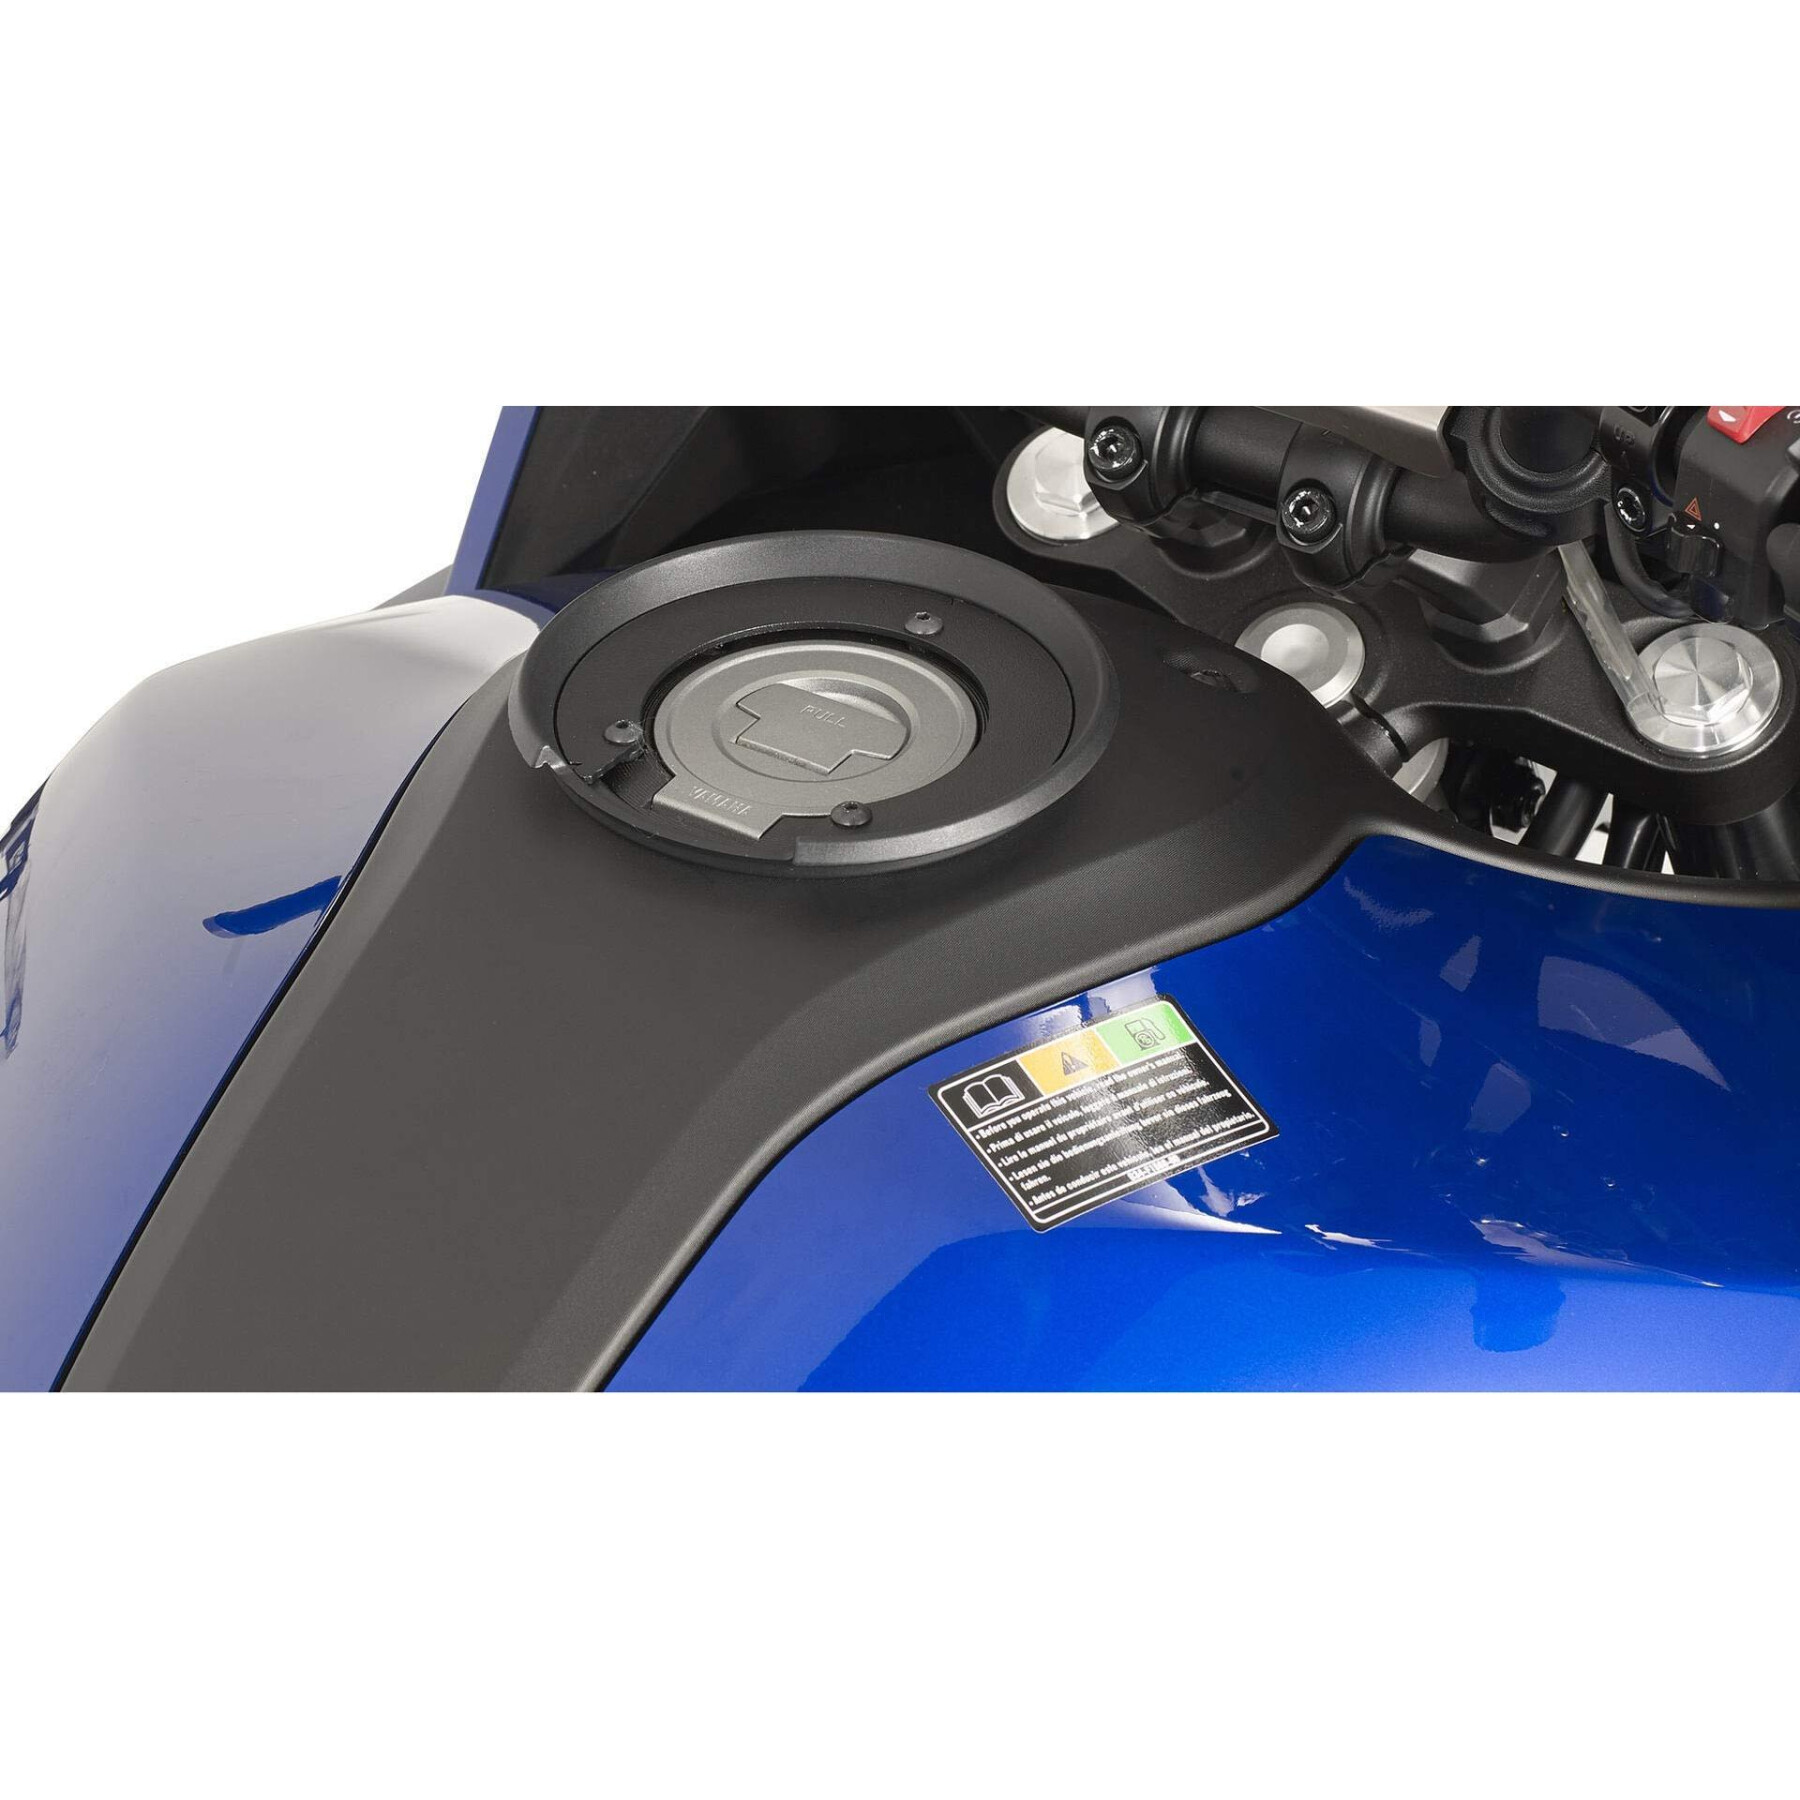 Bague réservoir moto IXS quick-lock TF19